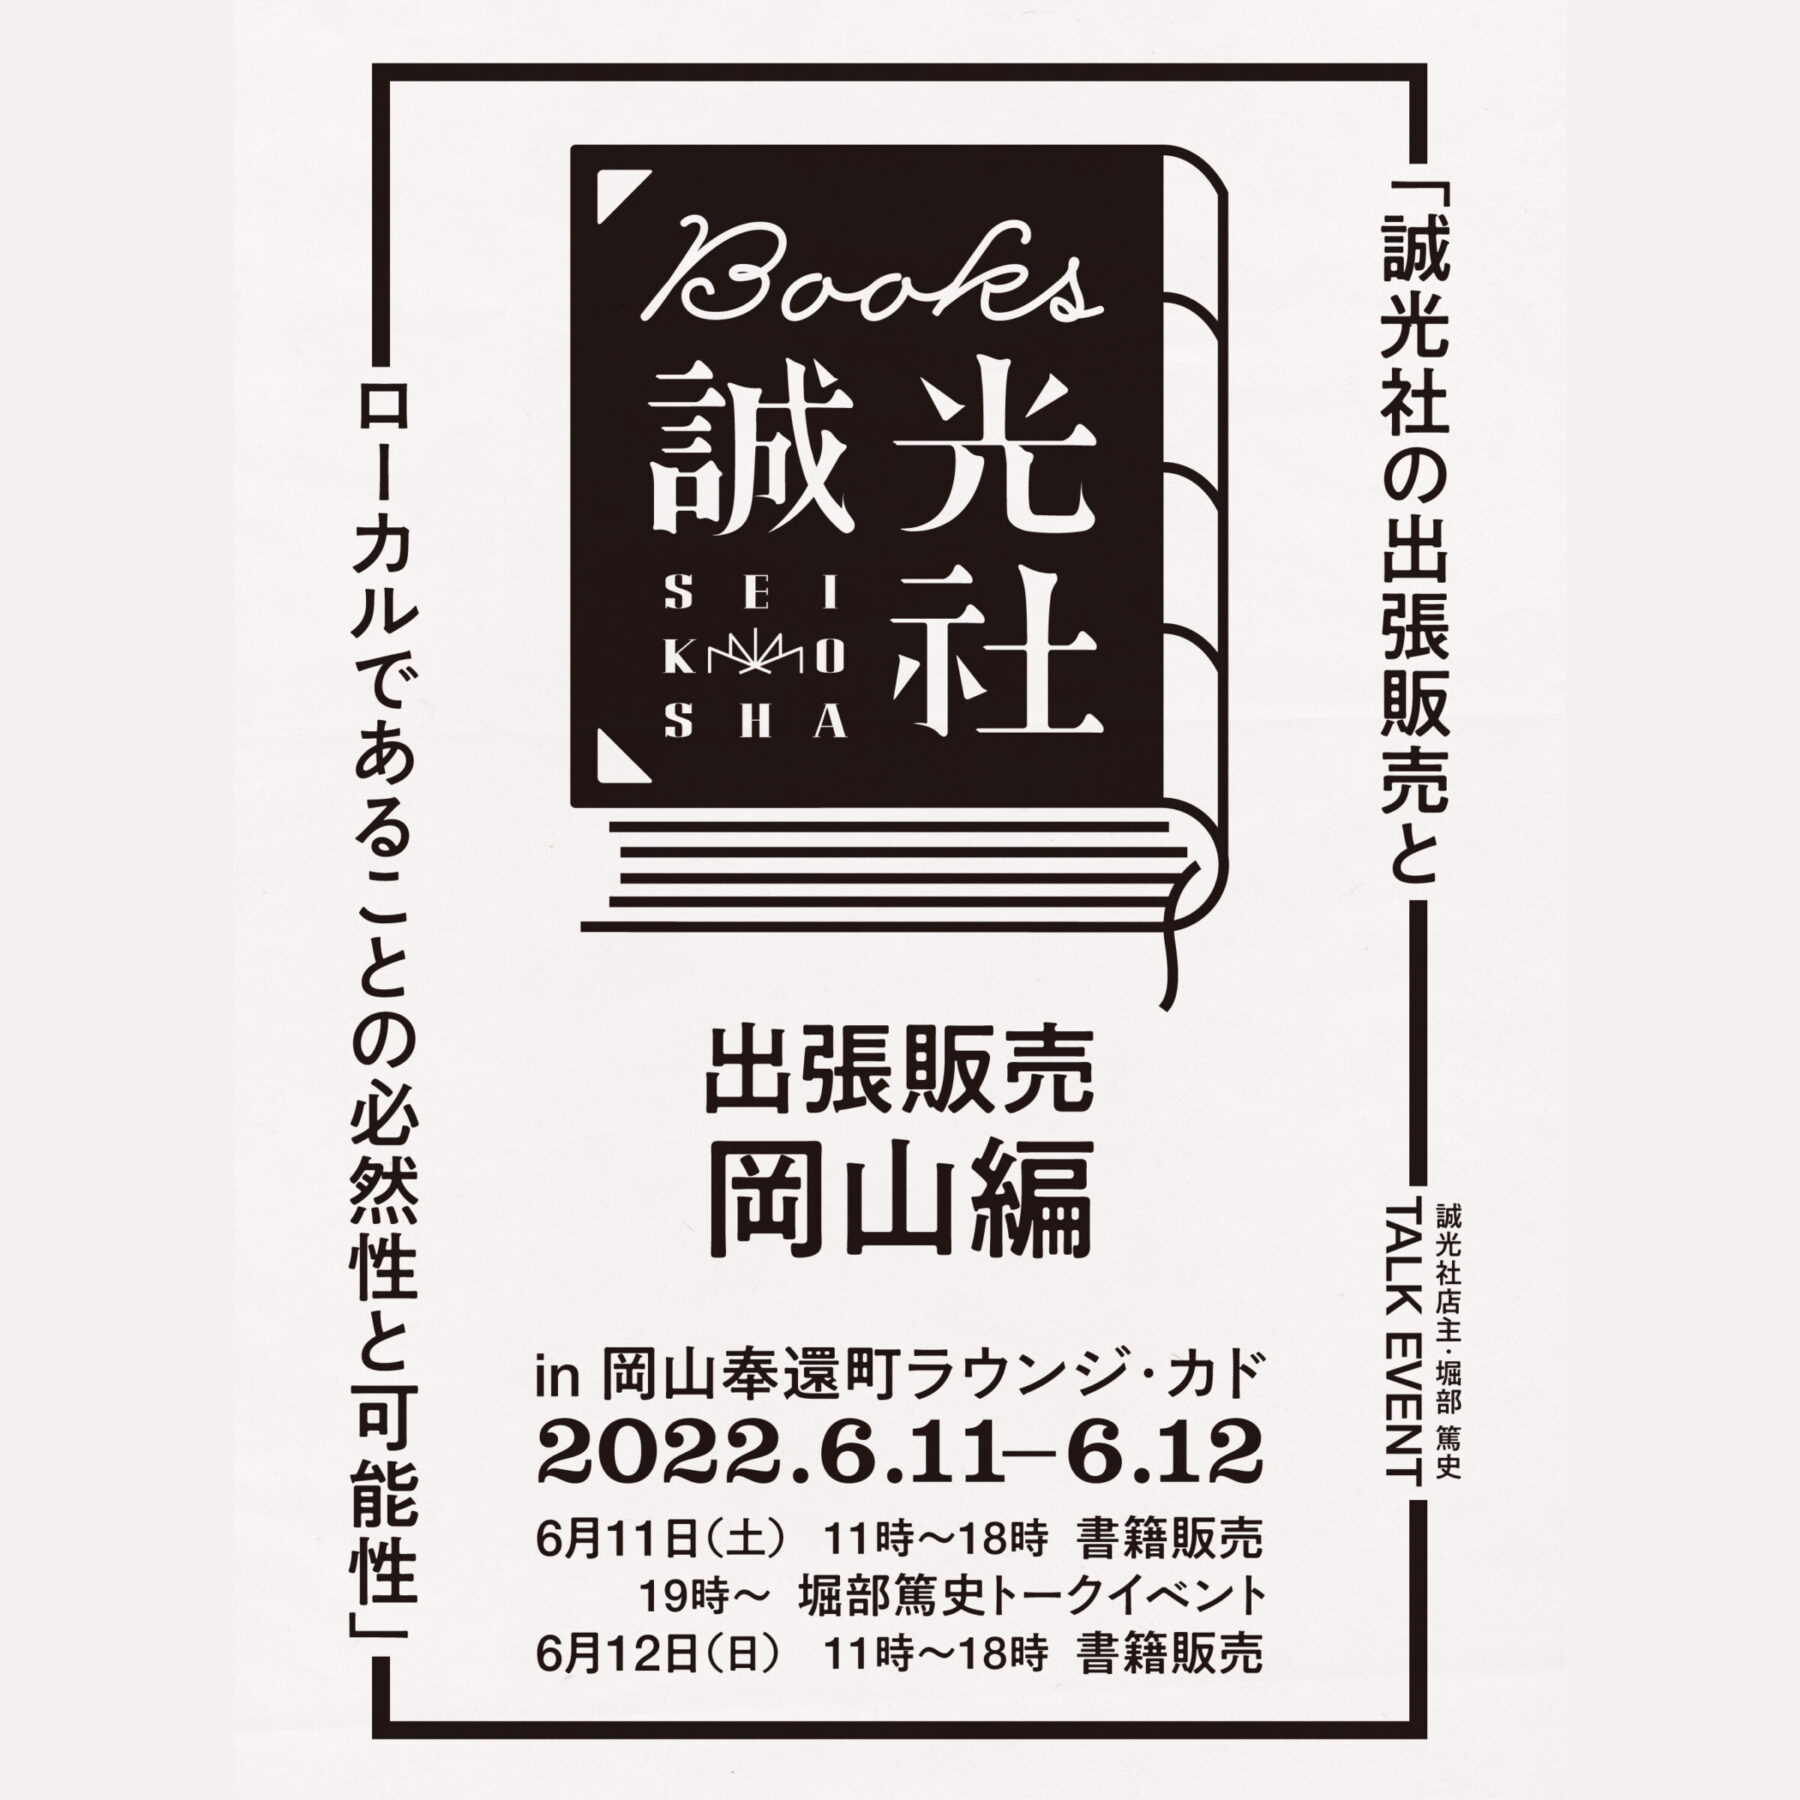 誠光社の出張販売と「ローカルであることの必然性と可能性」in 岡山